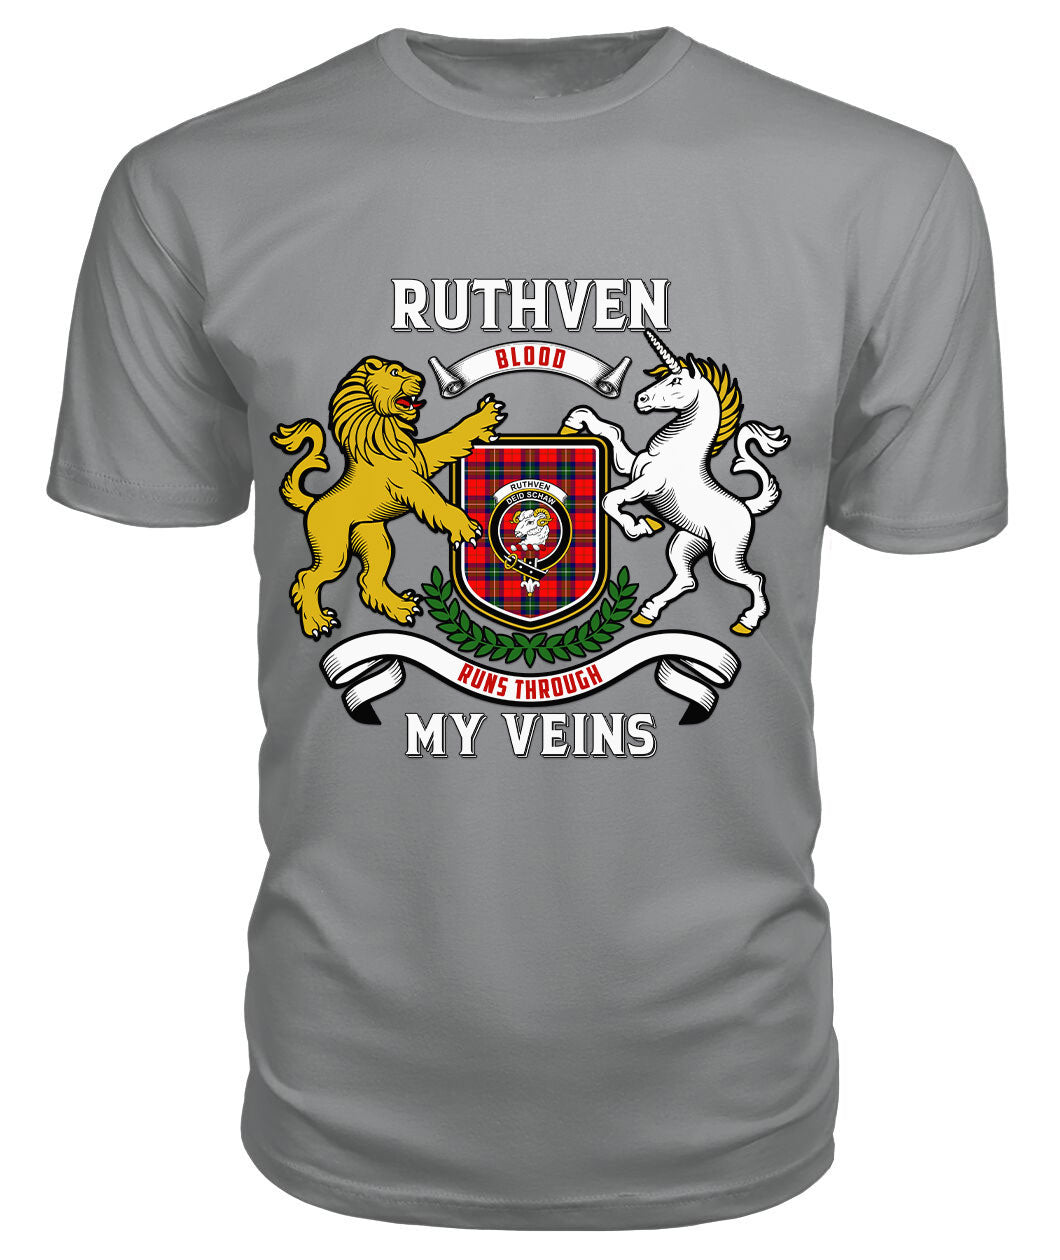 Ruthven Modern Tartan Crest 2D T-shirt - Blood Runs Through My Veins Style